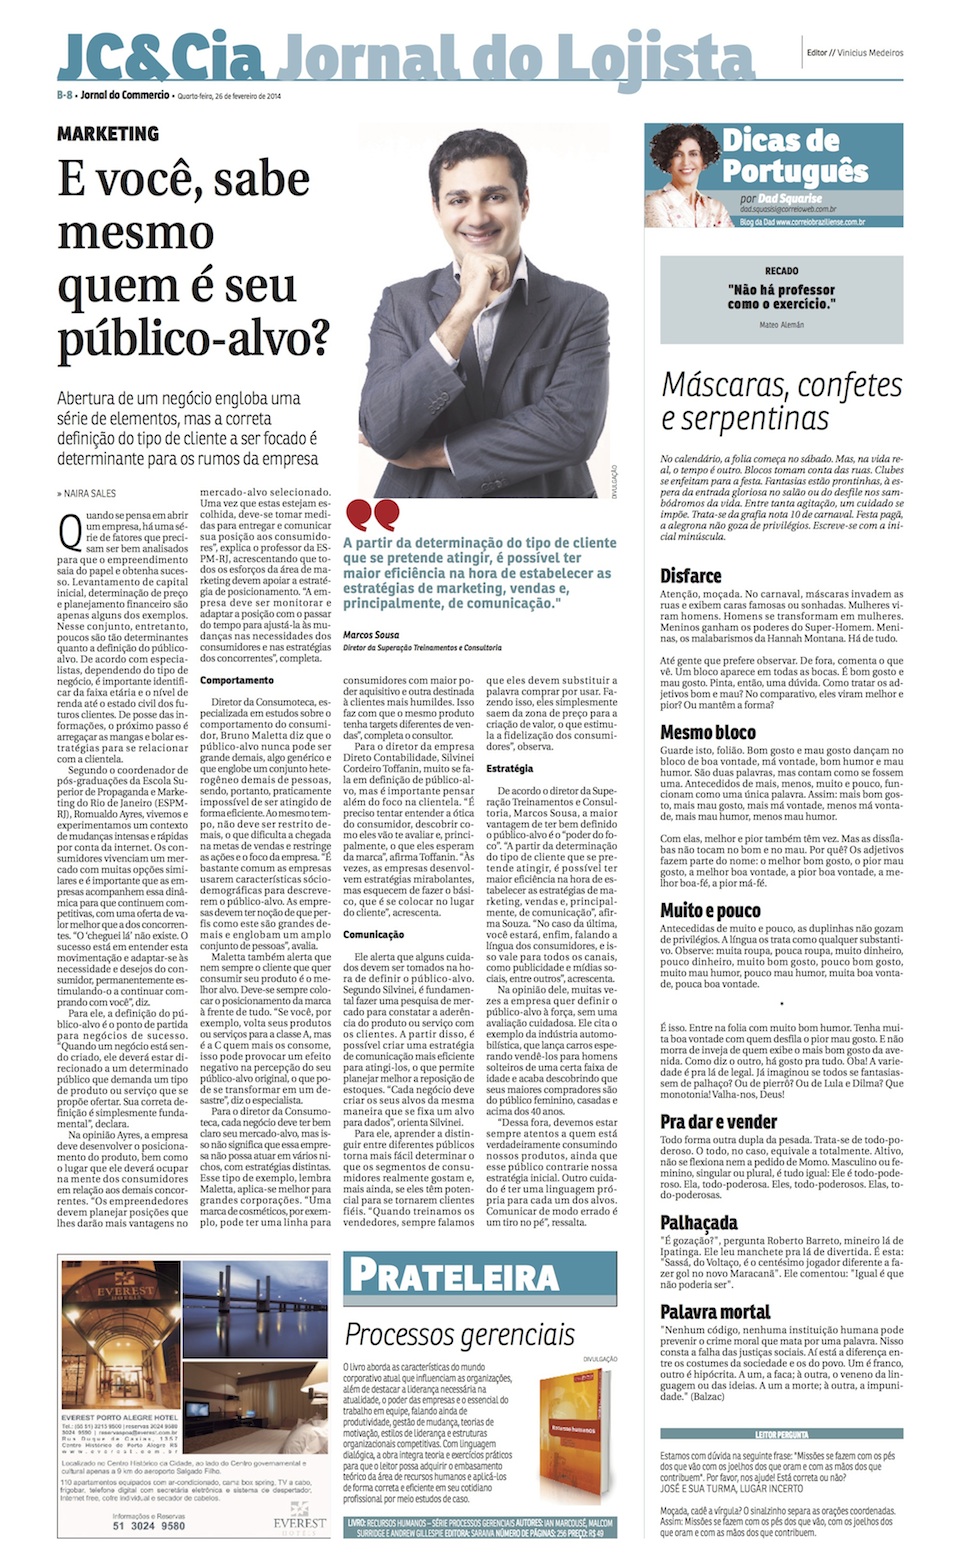 Reportagem_Jornal_do_Commercio1